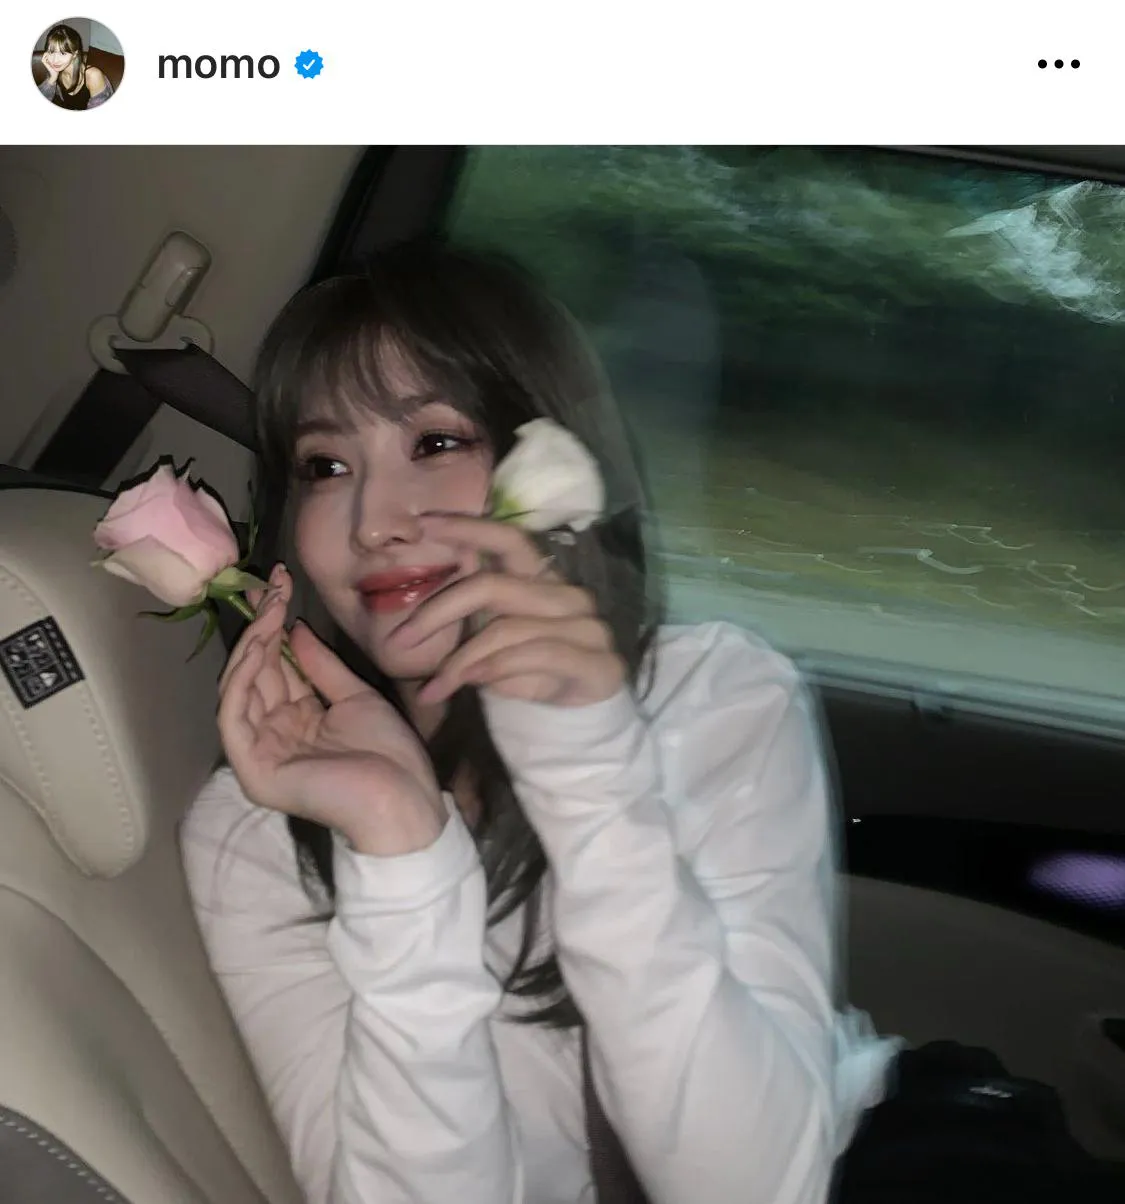 ※モモの公式Instagram(momo)からのスクリーンショット